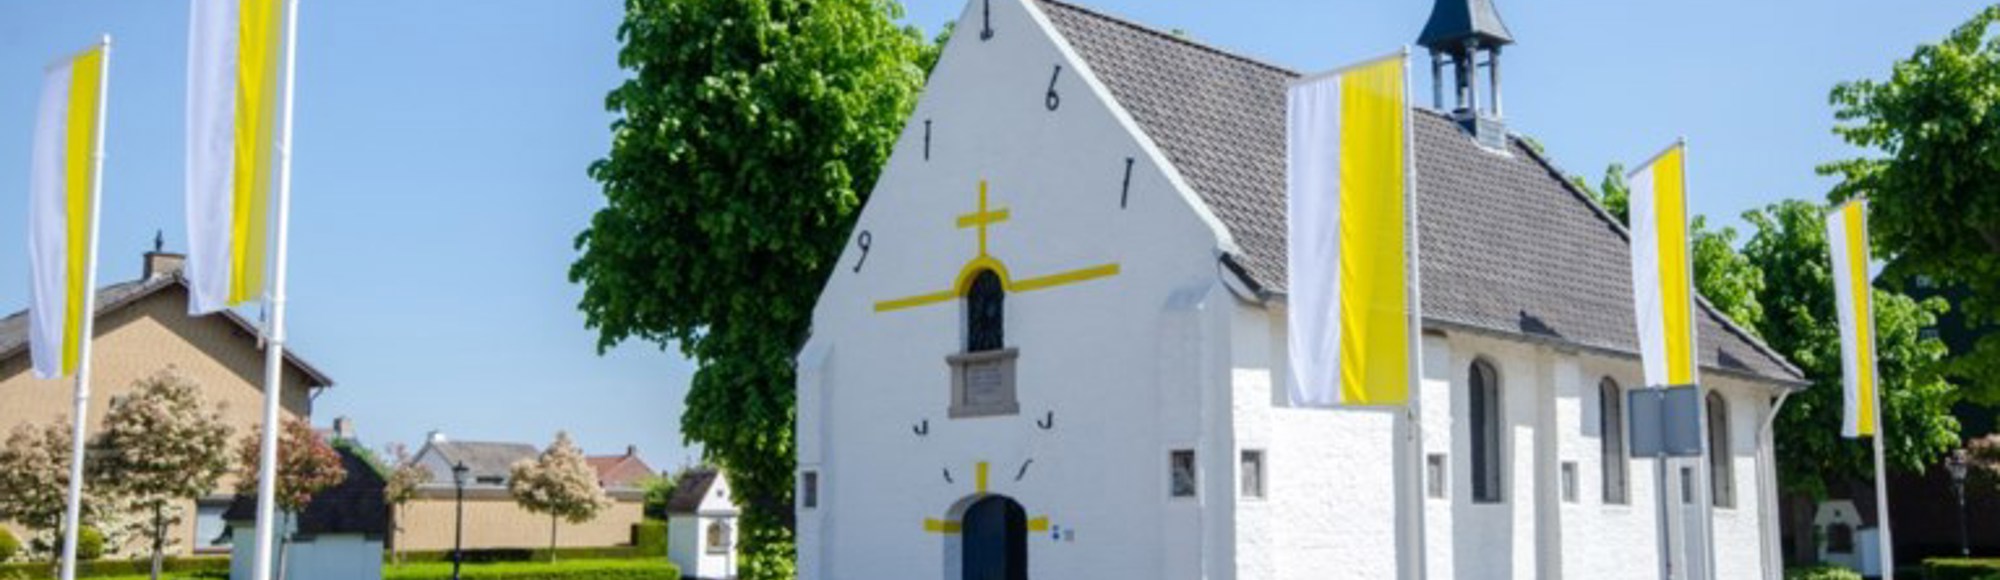 Een witte kapel gelegen aan een straat omringd met witgele vlaggen